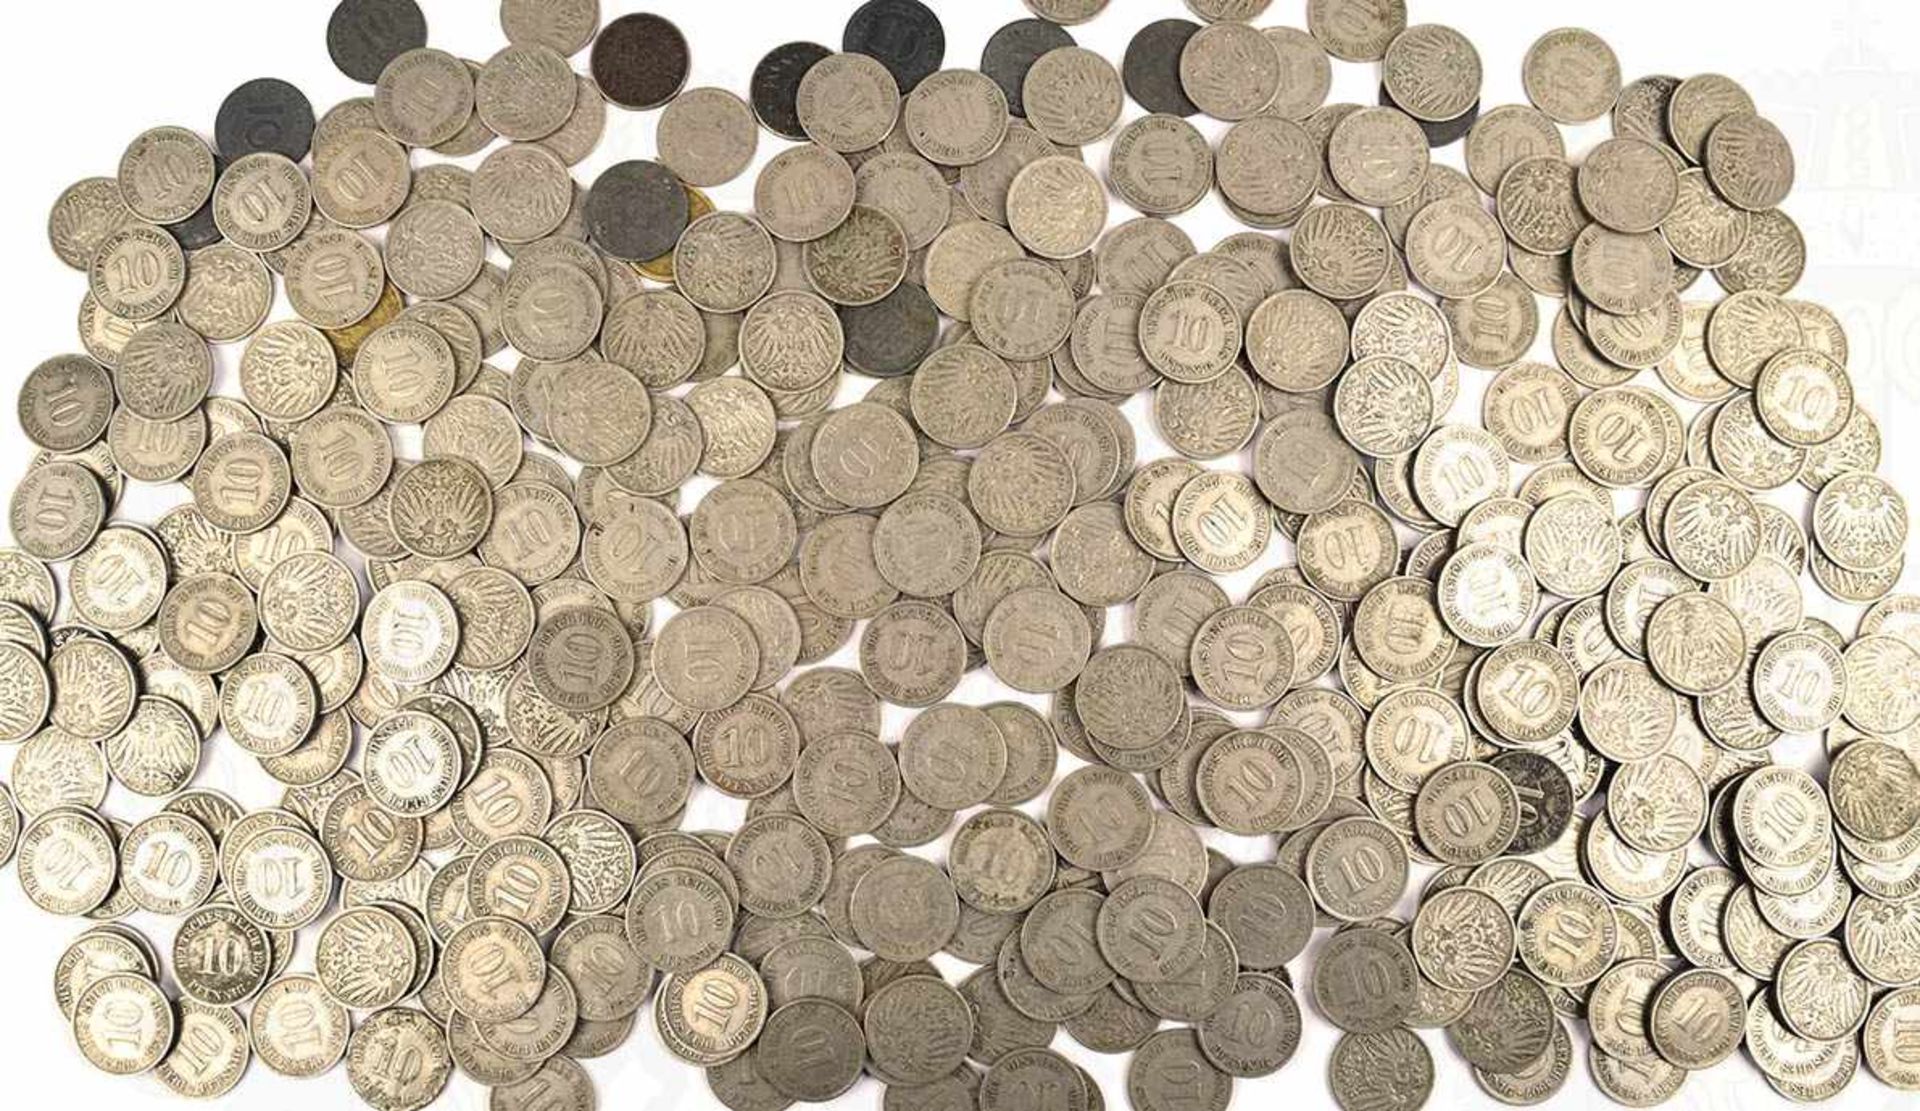 SAMMLUNG 10-PFENNIG MÜNZEN, ca. 400 Stück, 1875-1918, meist nach 1900, dazu einige Münzen 1919-25,